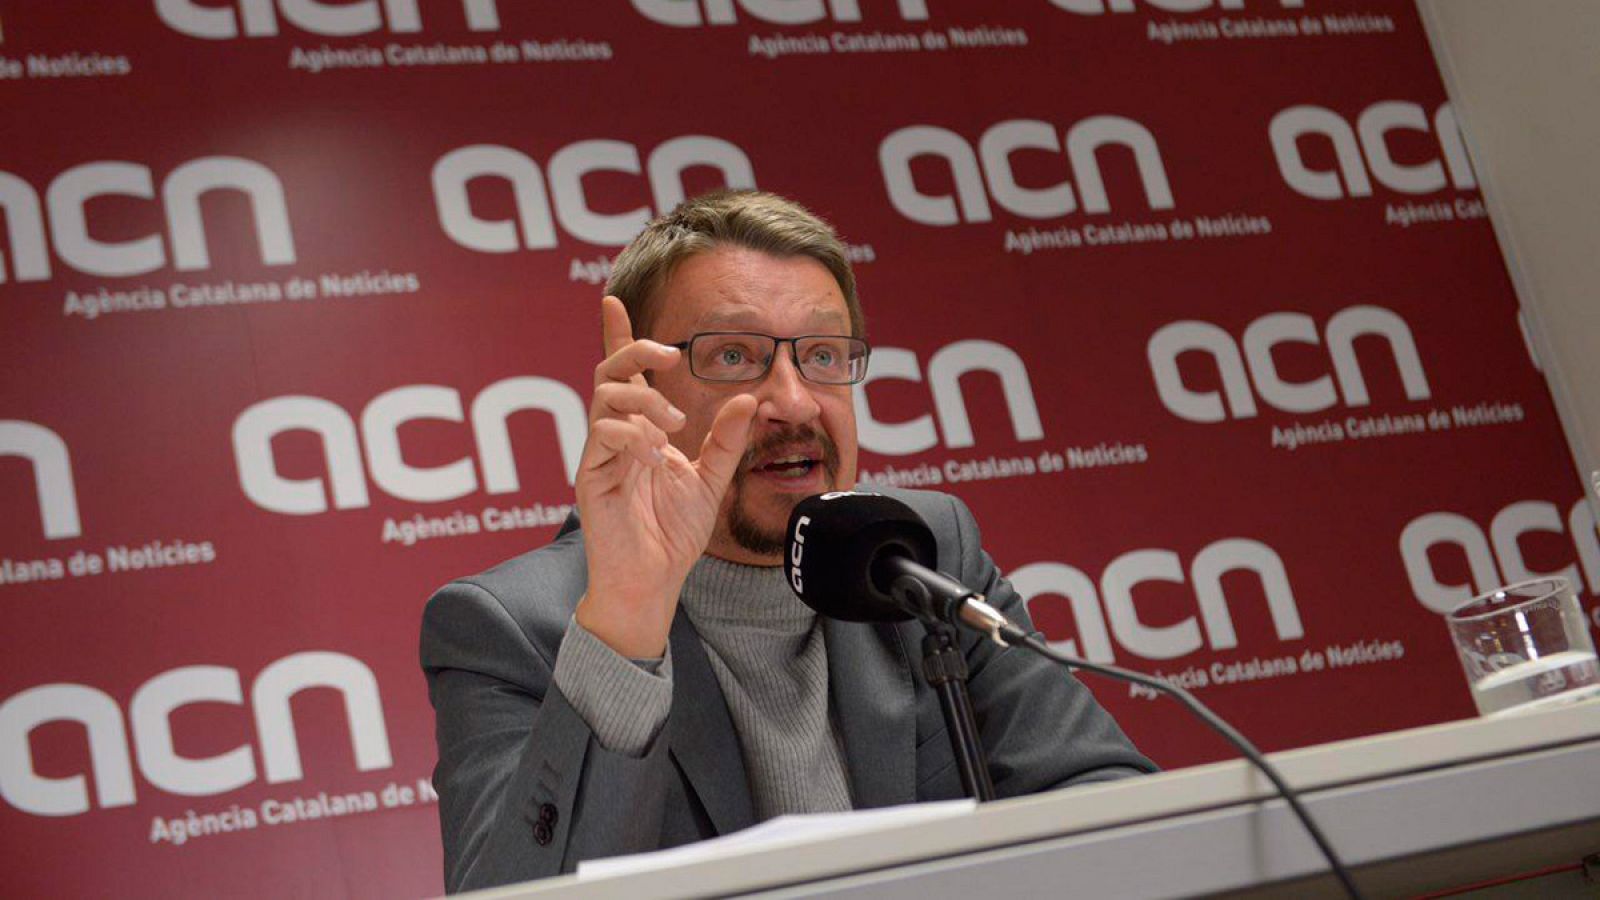 El candidato de Catalunya en Comú-Podem a la Generalitat, Xavier Domènech, en una rueda de prensa en la ACN